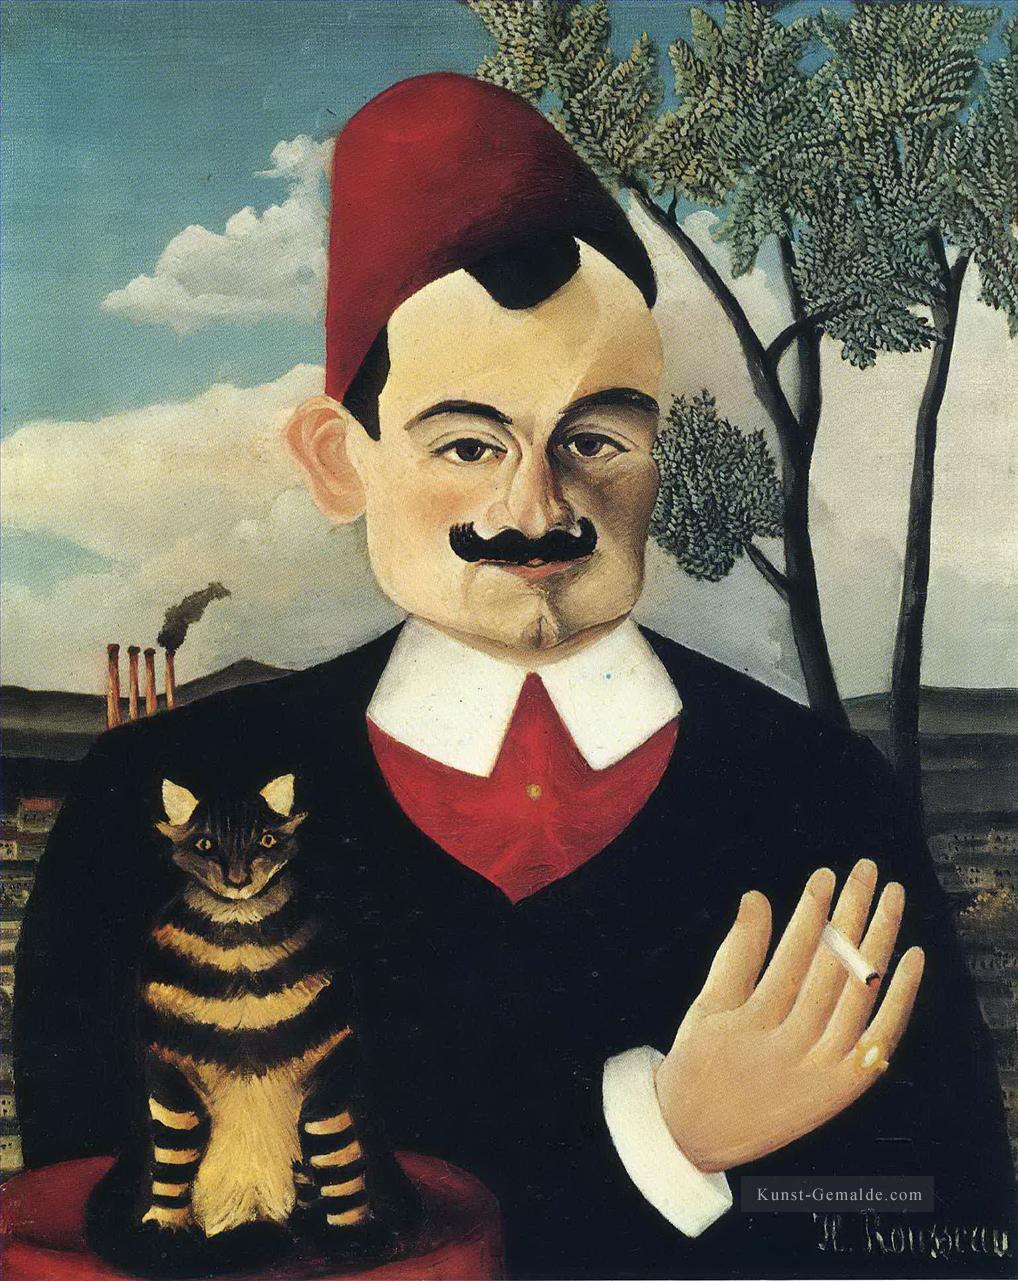 Porträt von Monsieur X Pierre Loti Henri Rousseau Post Impressionismus Naive Primitivismus Ölgemälde